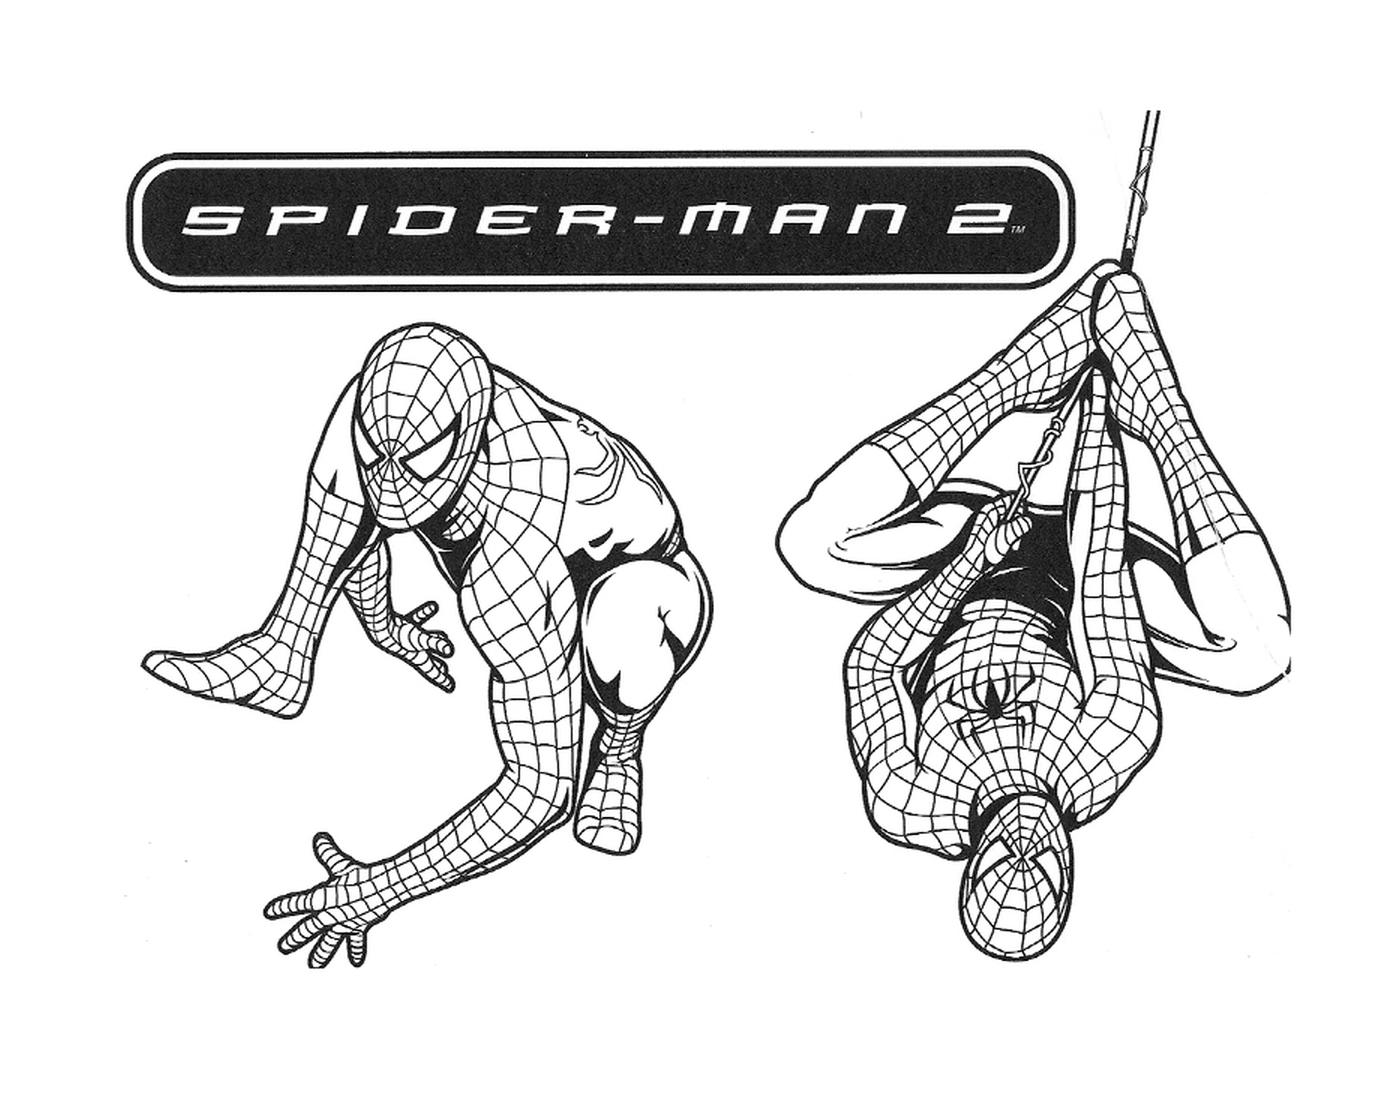  Spidermans Charakter 